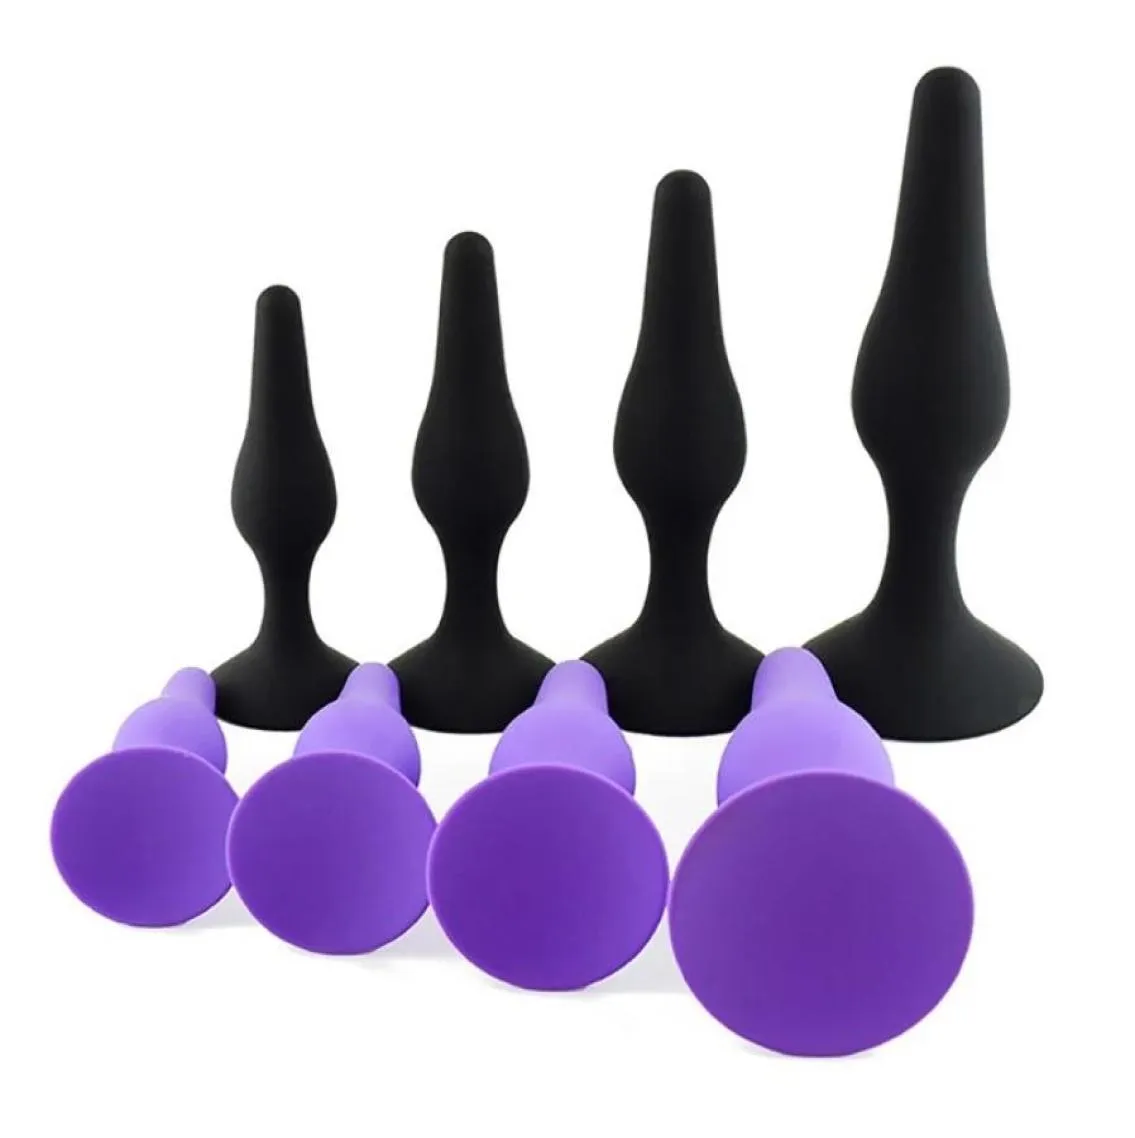 Massagem 4pcsset butt plug para iniciantes brinquedos eróticos de silicone de silicone produtos adultos brinquedos sexuais anal para homens mulheres gays próstata MAS7142174